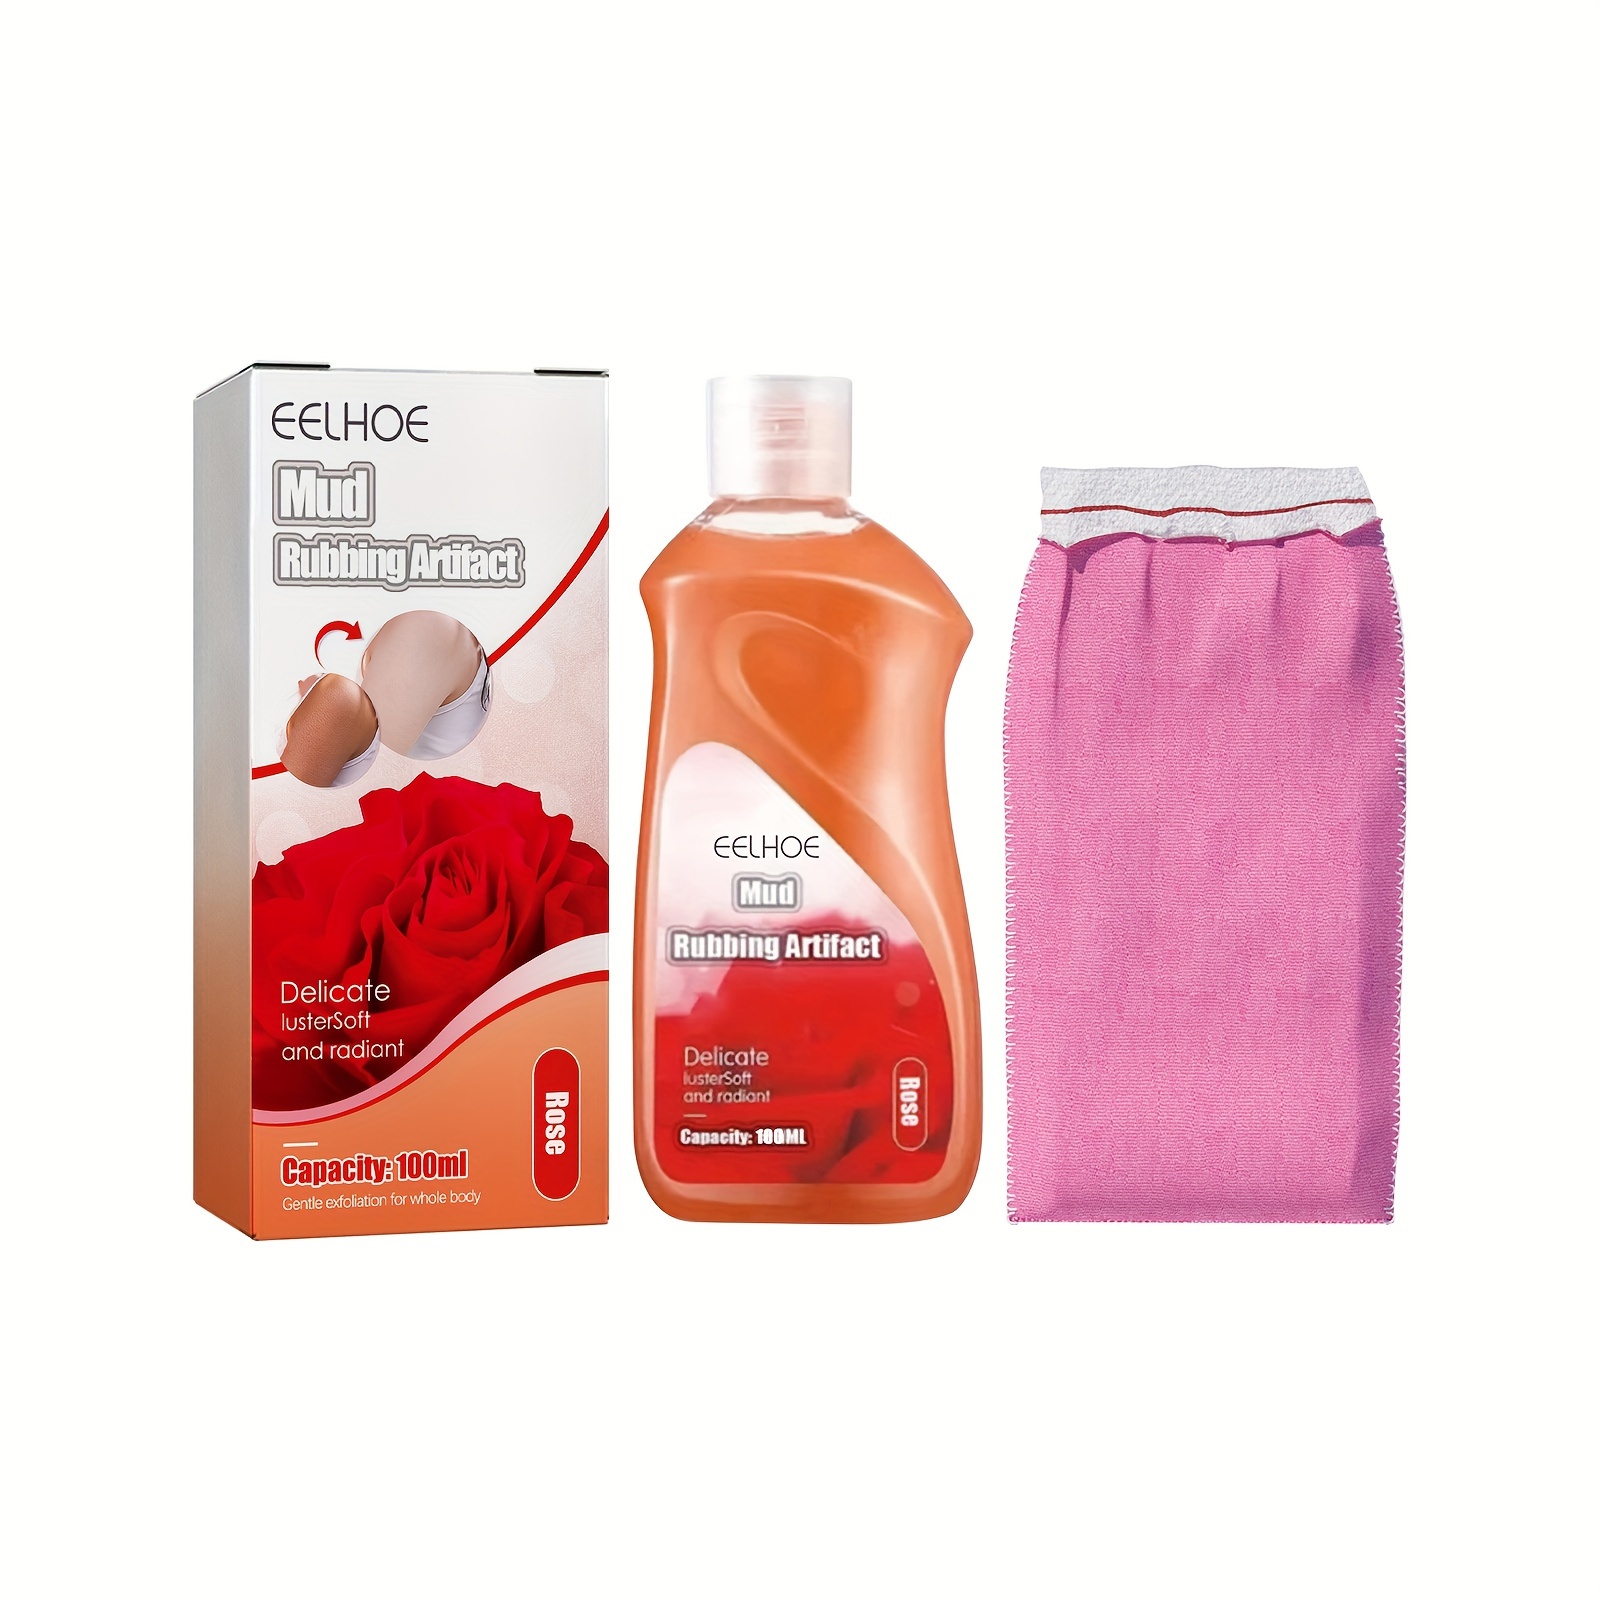 Comprar 1 Uds baño para pelar guantes exfoliantes ducha guantes para fregar  masaje exfoliante corporal